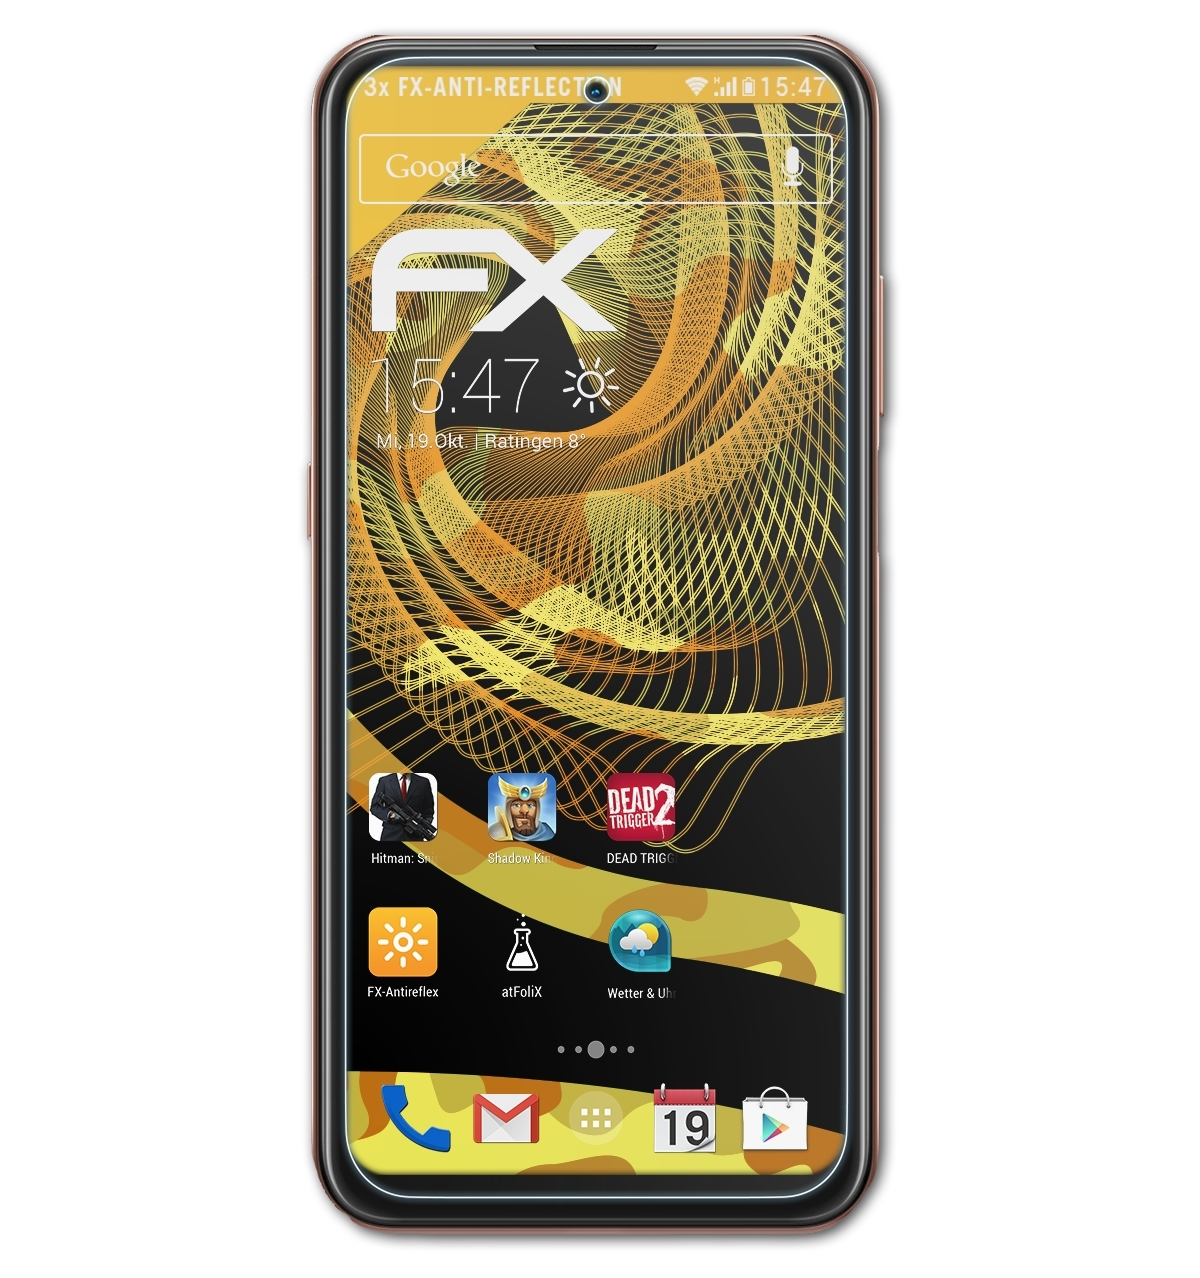 Displayschutz(für X20) Nokia ATFOLIX 3x FX-Antireflex